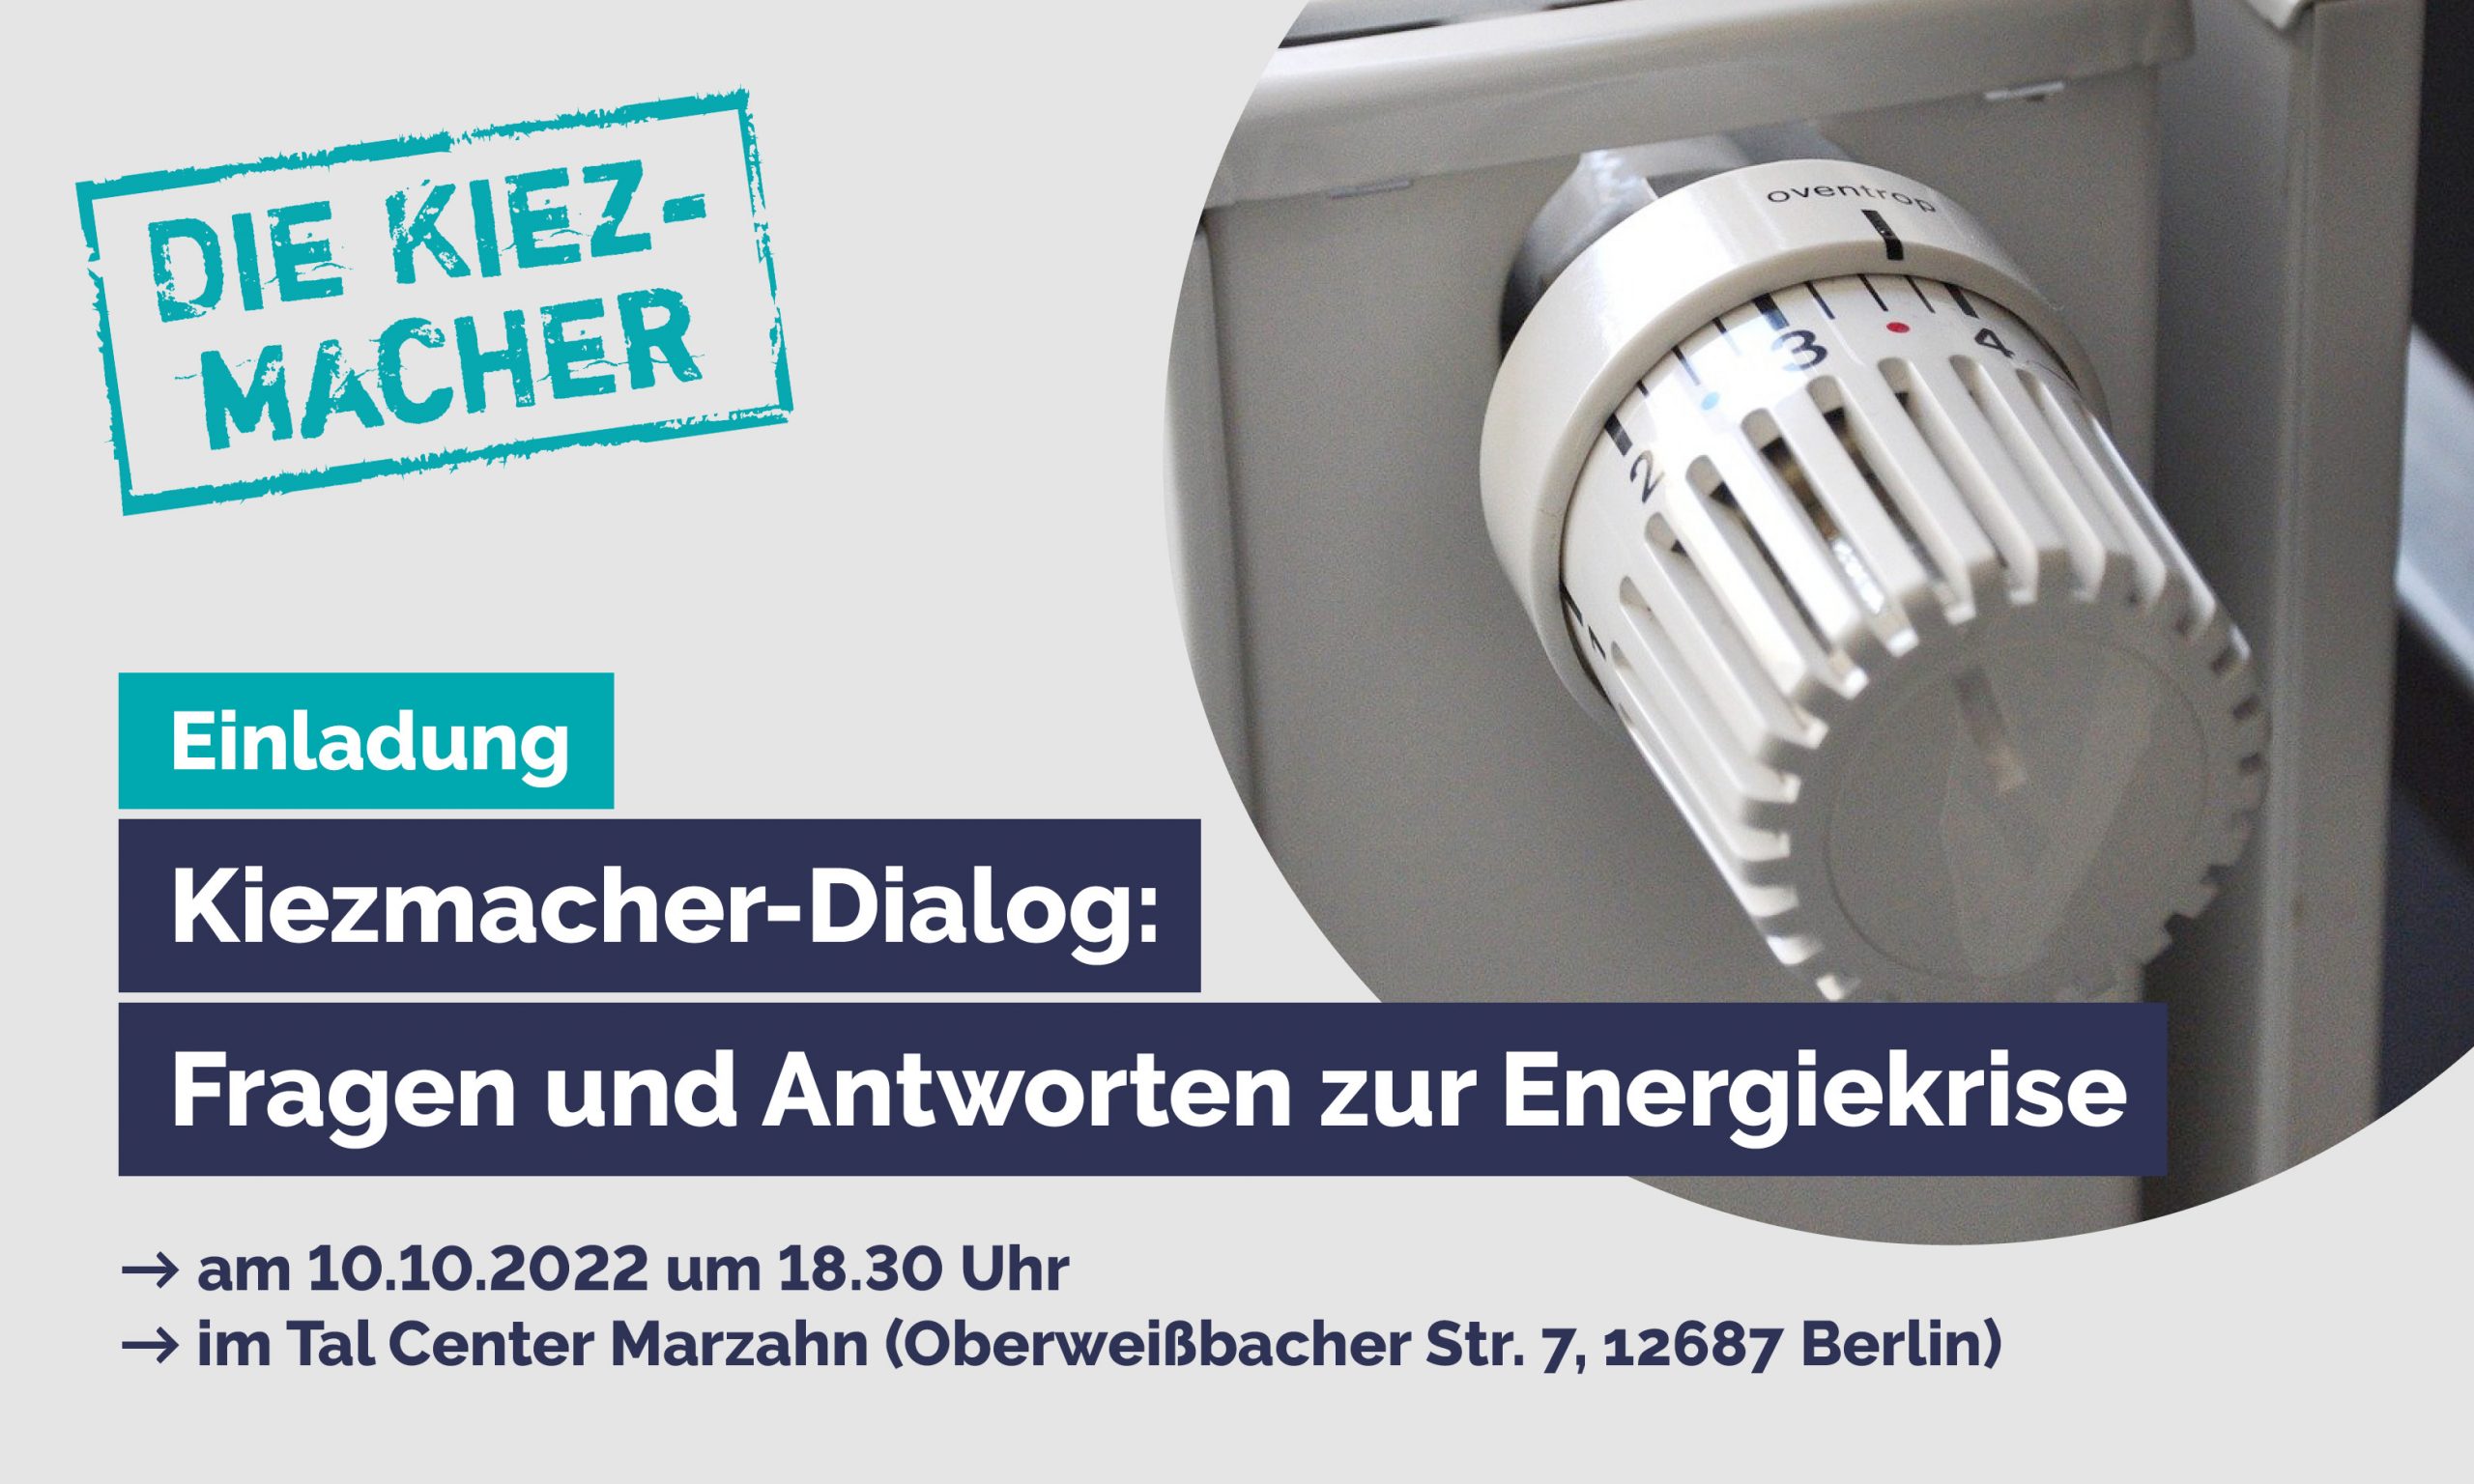 Kiezmacher-Dialog „Fragen und Antworten zur Energiekrise“